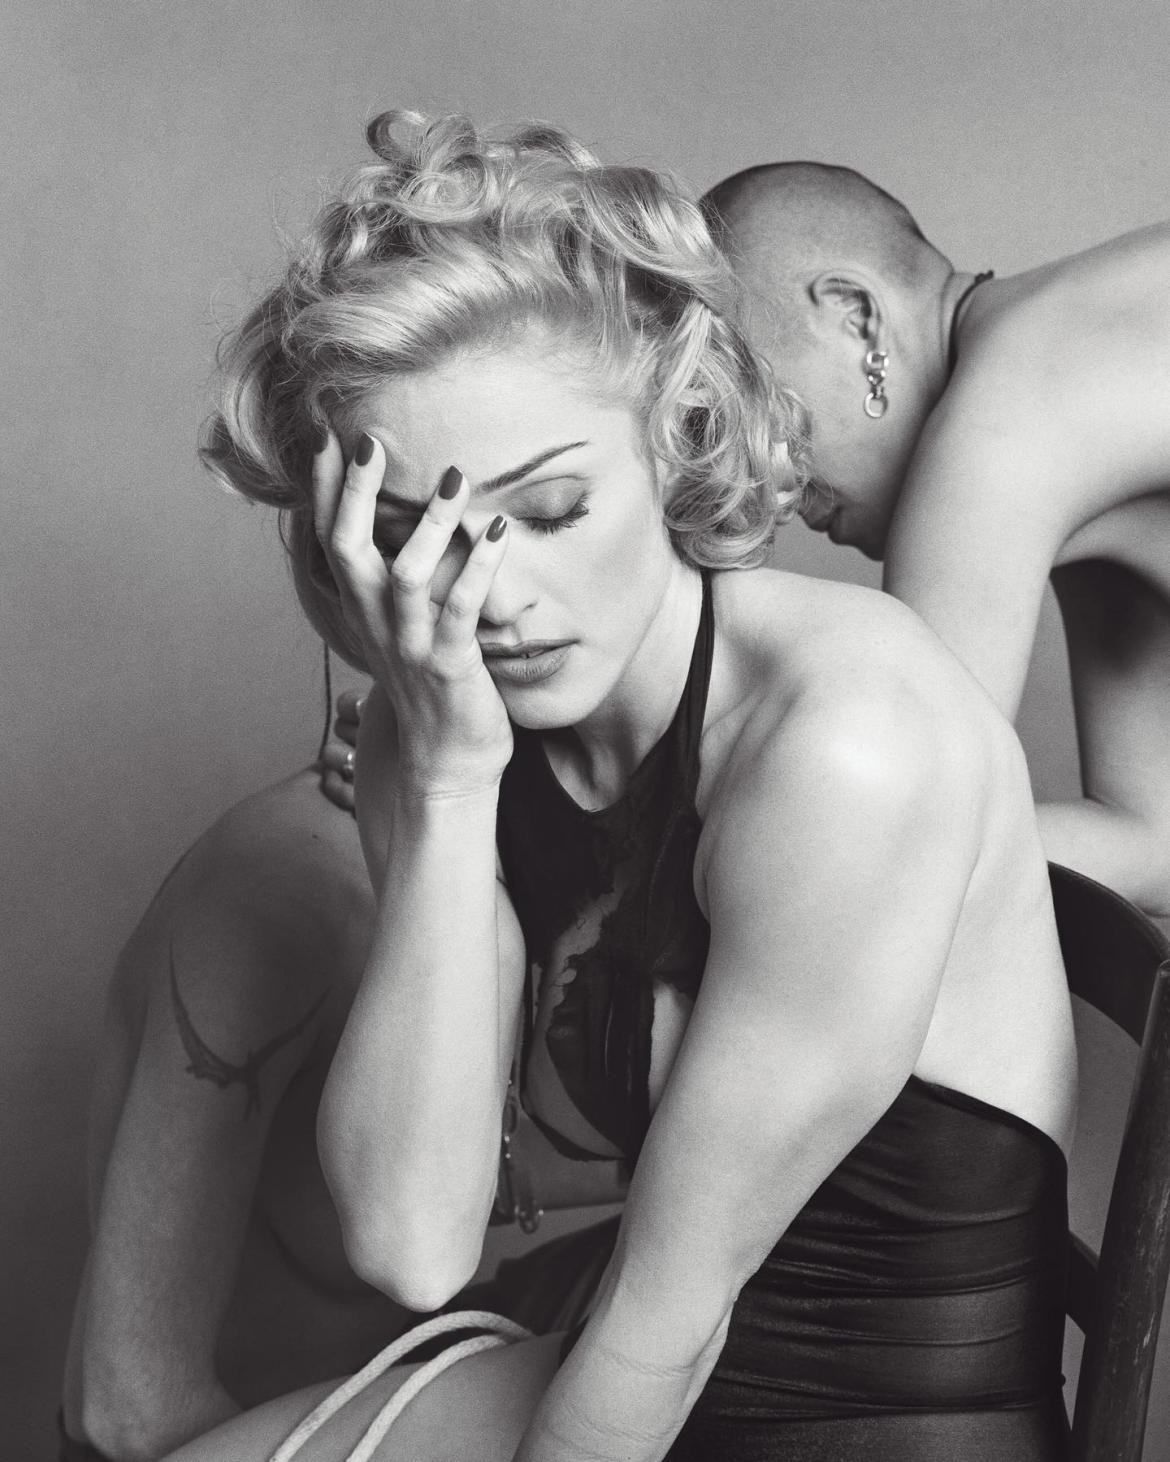 Subastan fotos del libro "Sex" de Madonna. Foto: Instagram/madonna.